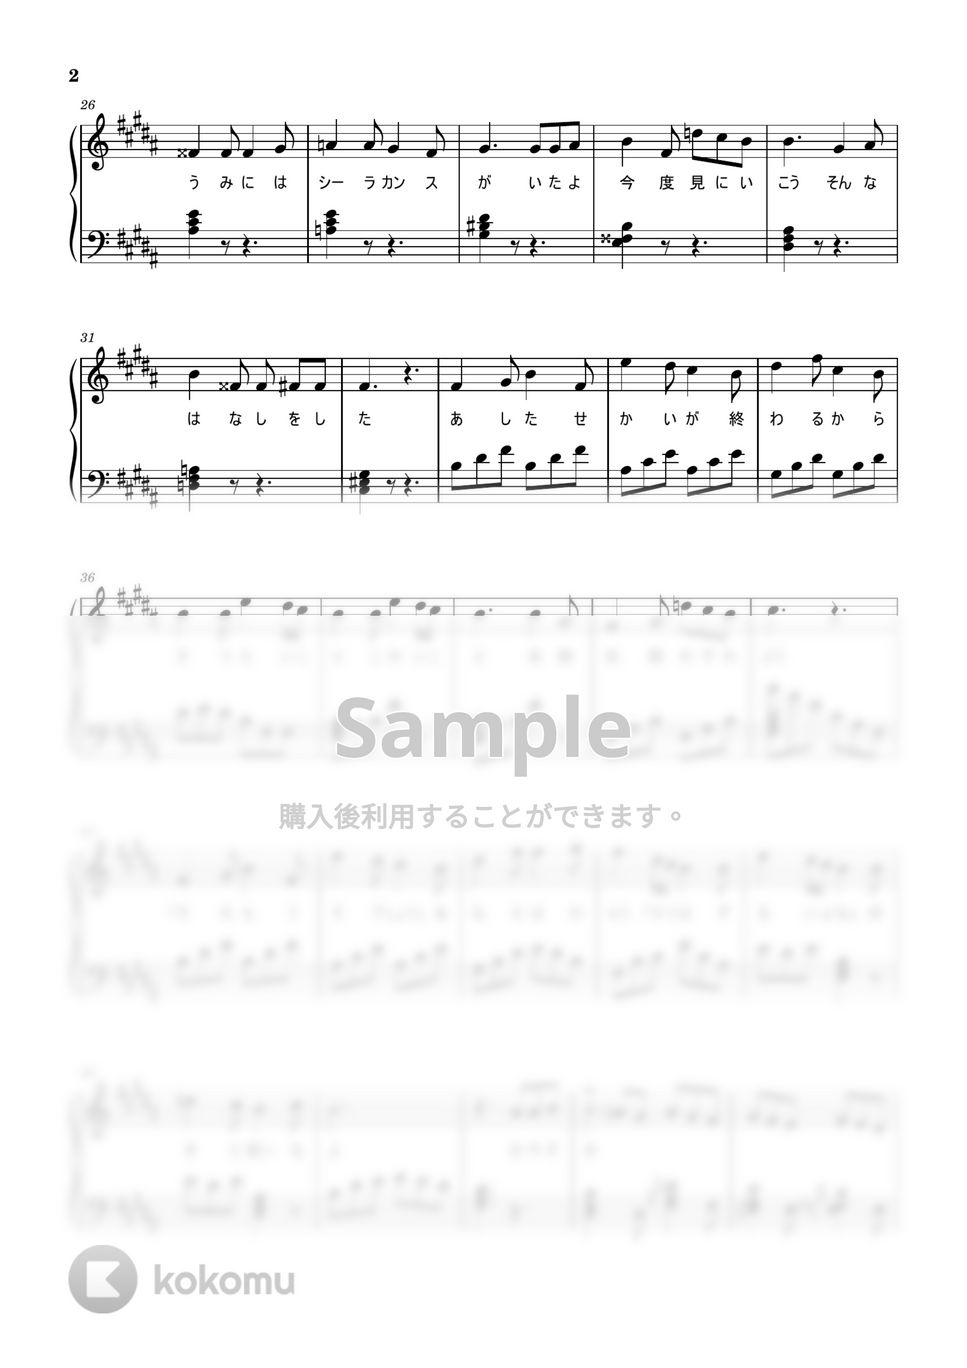 ナユタン星人 - 火星のララバイ (ピアノソロ) by ekkekuru2